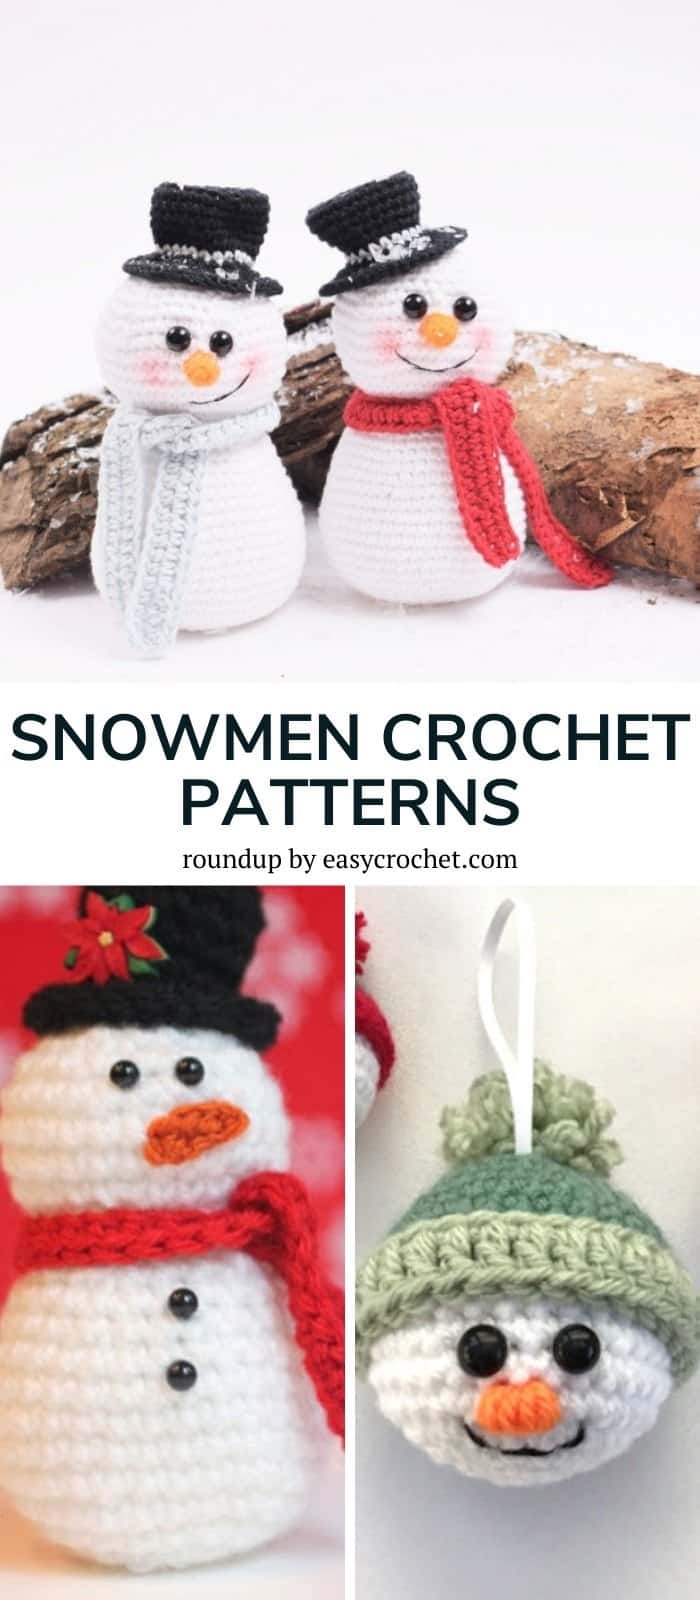 Crochet snowmen patterns free